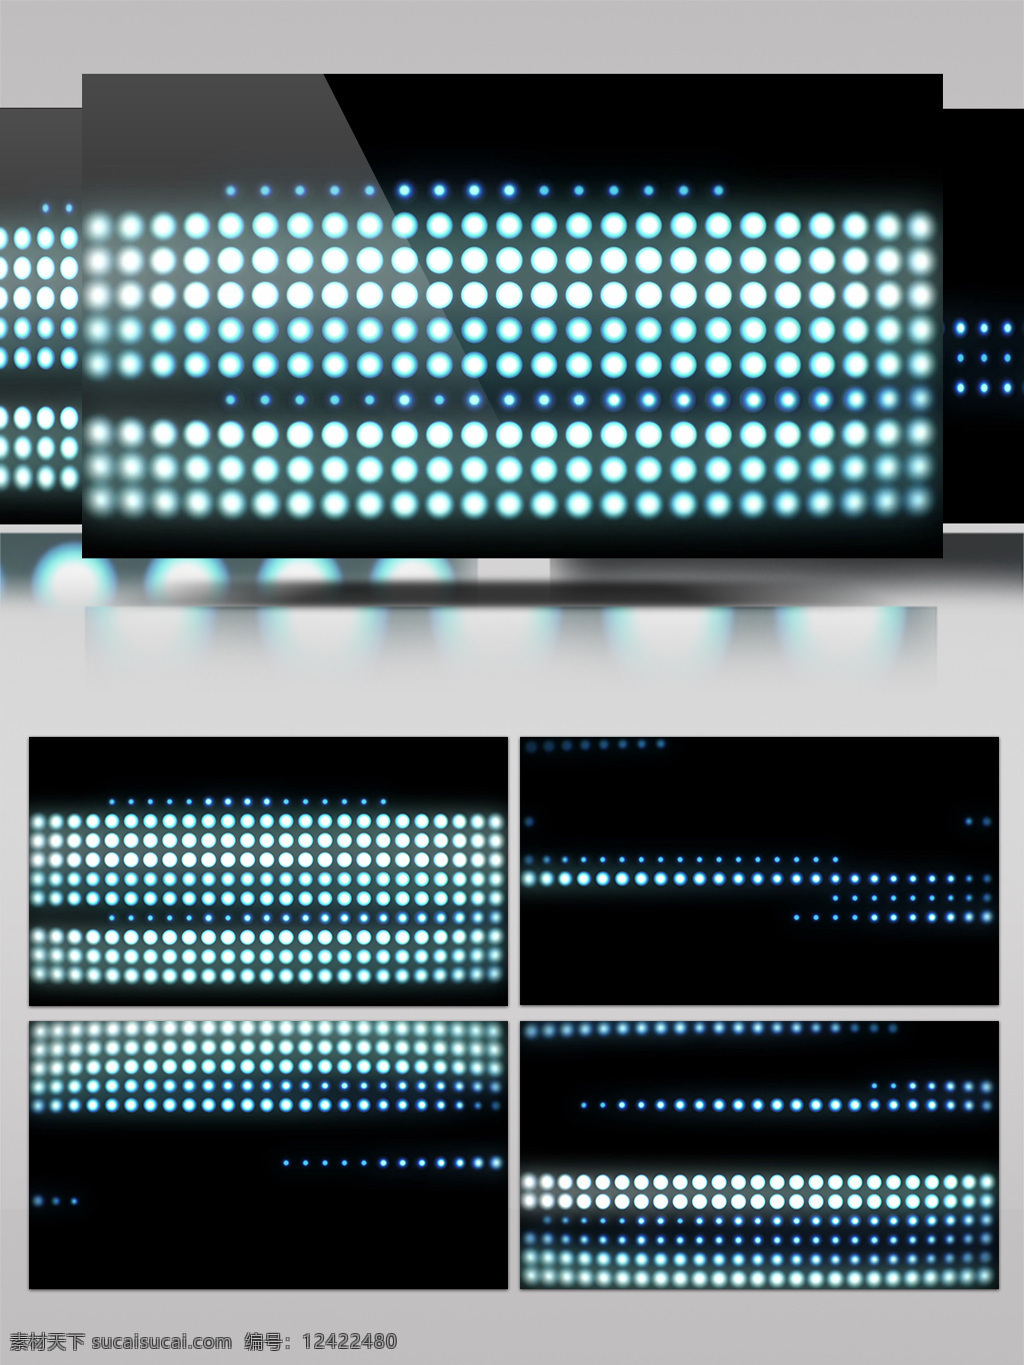 光 白 粒子 视频 白光离子 光粒子闪烁 光斑碎点 漂浮光 浮光掠影 前进隧道 3d视频素材 特效视频素材